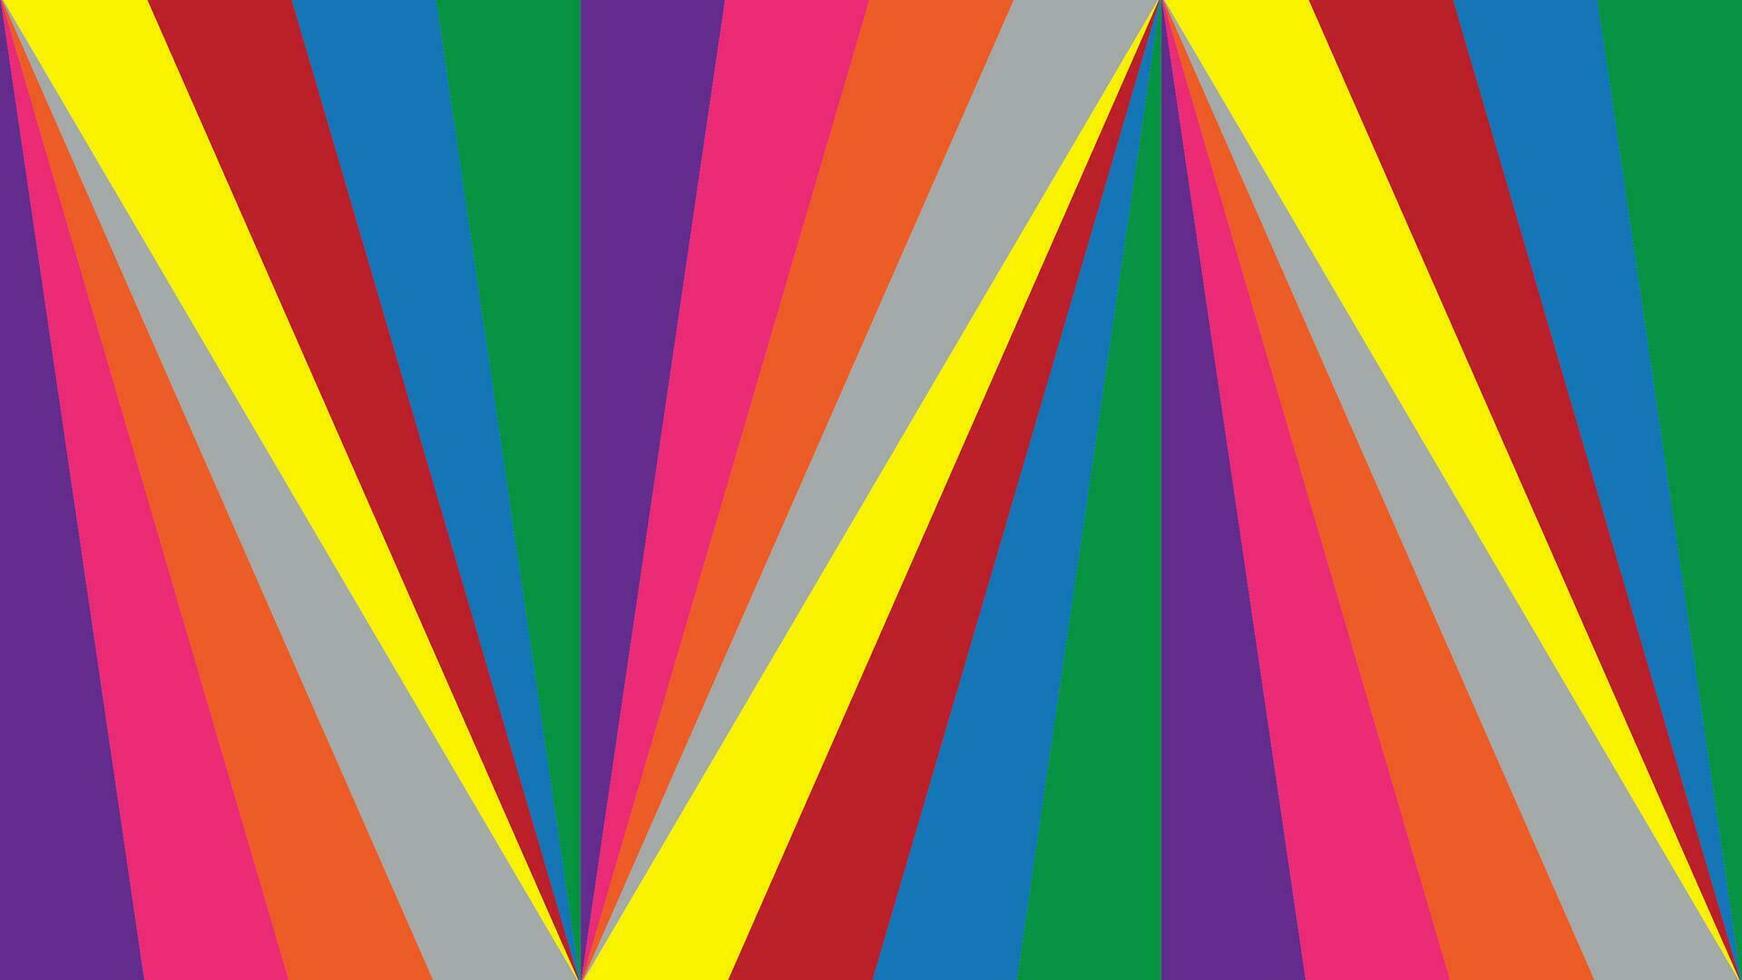 vistoso modelo con triángulo forma azul, rojo, amarillo, gris púrpura, naranja, verde y rosado color. vector ilustración.